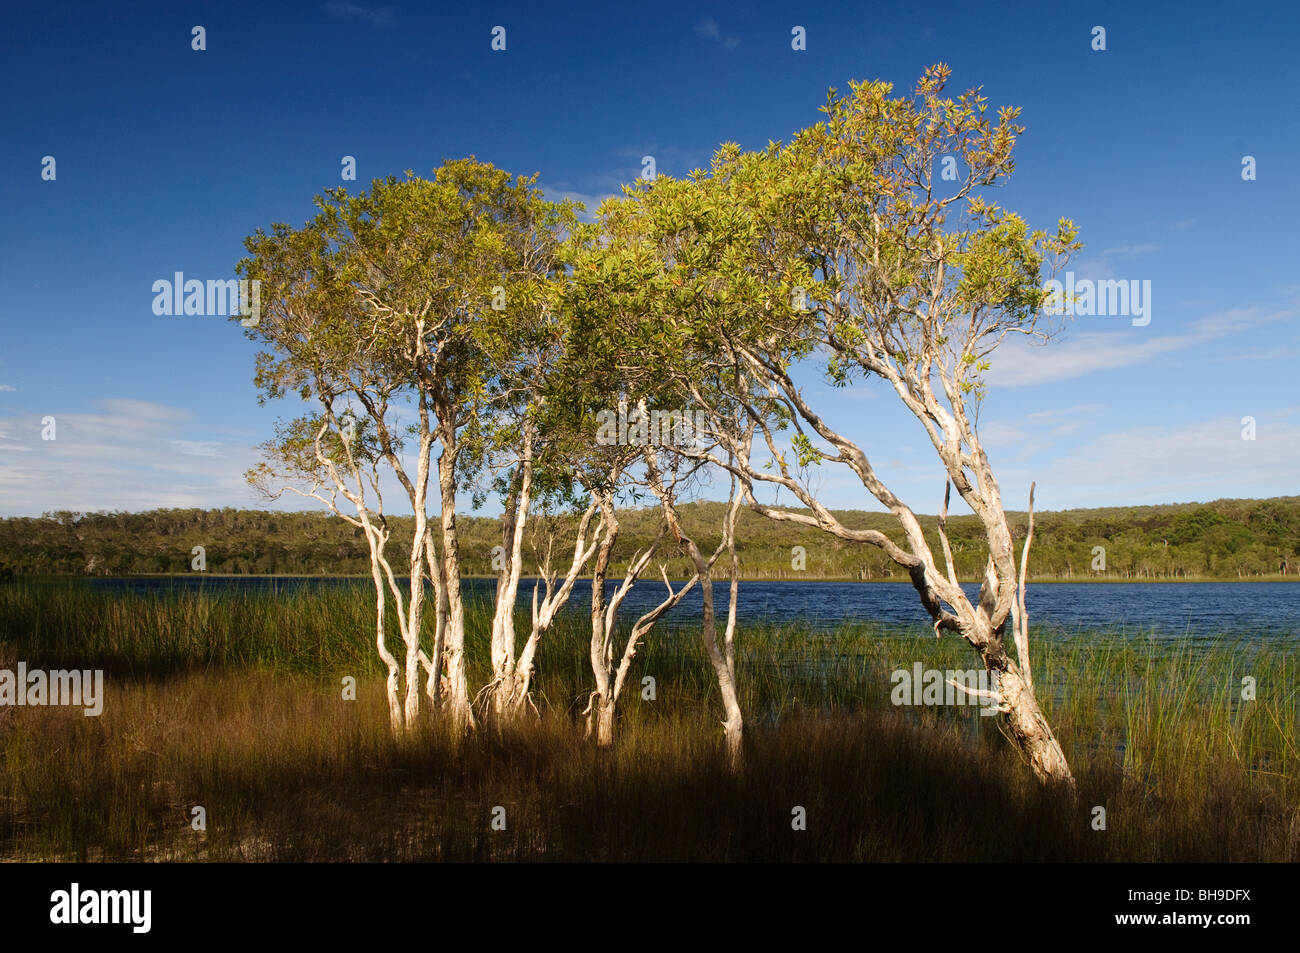 NORTH Stradbroke Island, Australie - Brown Lake est un lac du Nord sur Stradbroke Island, dans le Queensland, Australie. Connu comme un lac, comme d'autres lacs perchés sur les îles sablonneuses de la région du sud-est de Queensland il conserve son eau en raison d'une couche de feuilles qui tapissent le fond du lac.[1] Cela est particulièrement apparent dans le lac Brown que le tanin est exsudée par les feuilles, tombé de entourant Paperbark Melaleuca et Ti-arbres Callistemon, les taches à l'eau une couleur brun riche n'est pas sans ressembler à celle de thé. North Stradbroke Island, juste à côté de l'État du Queensland, capitale de Brisbane, est le monde" Banque D'Images